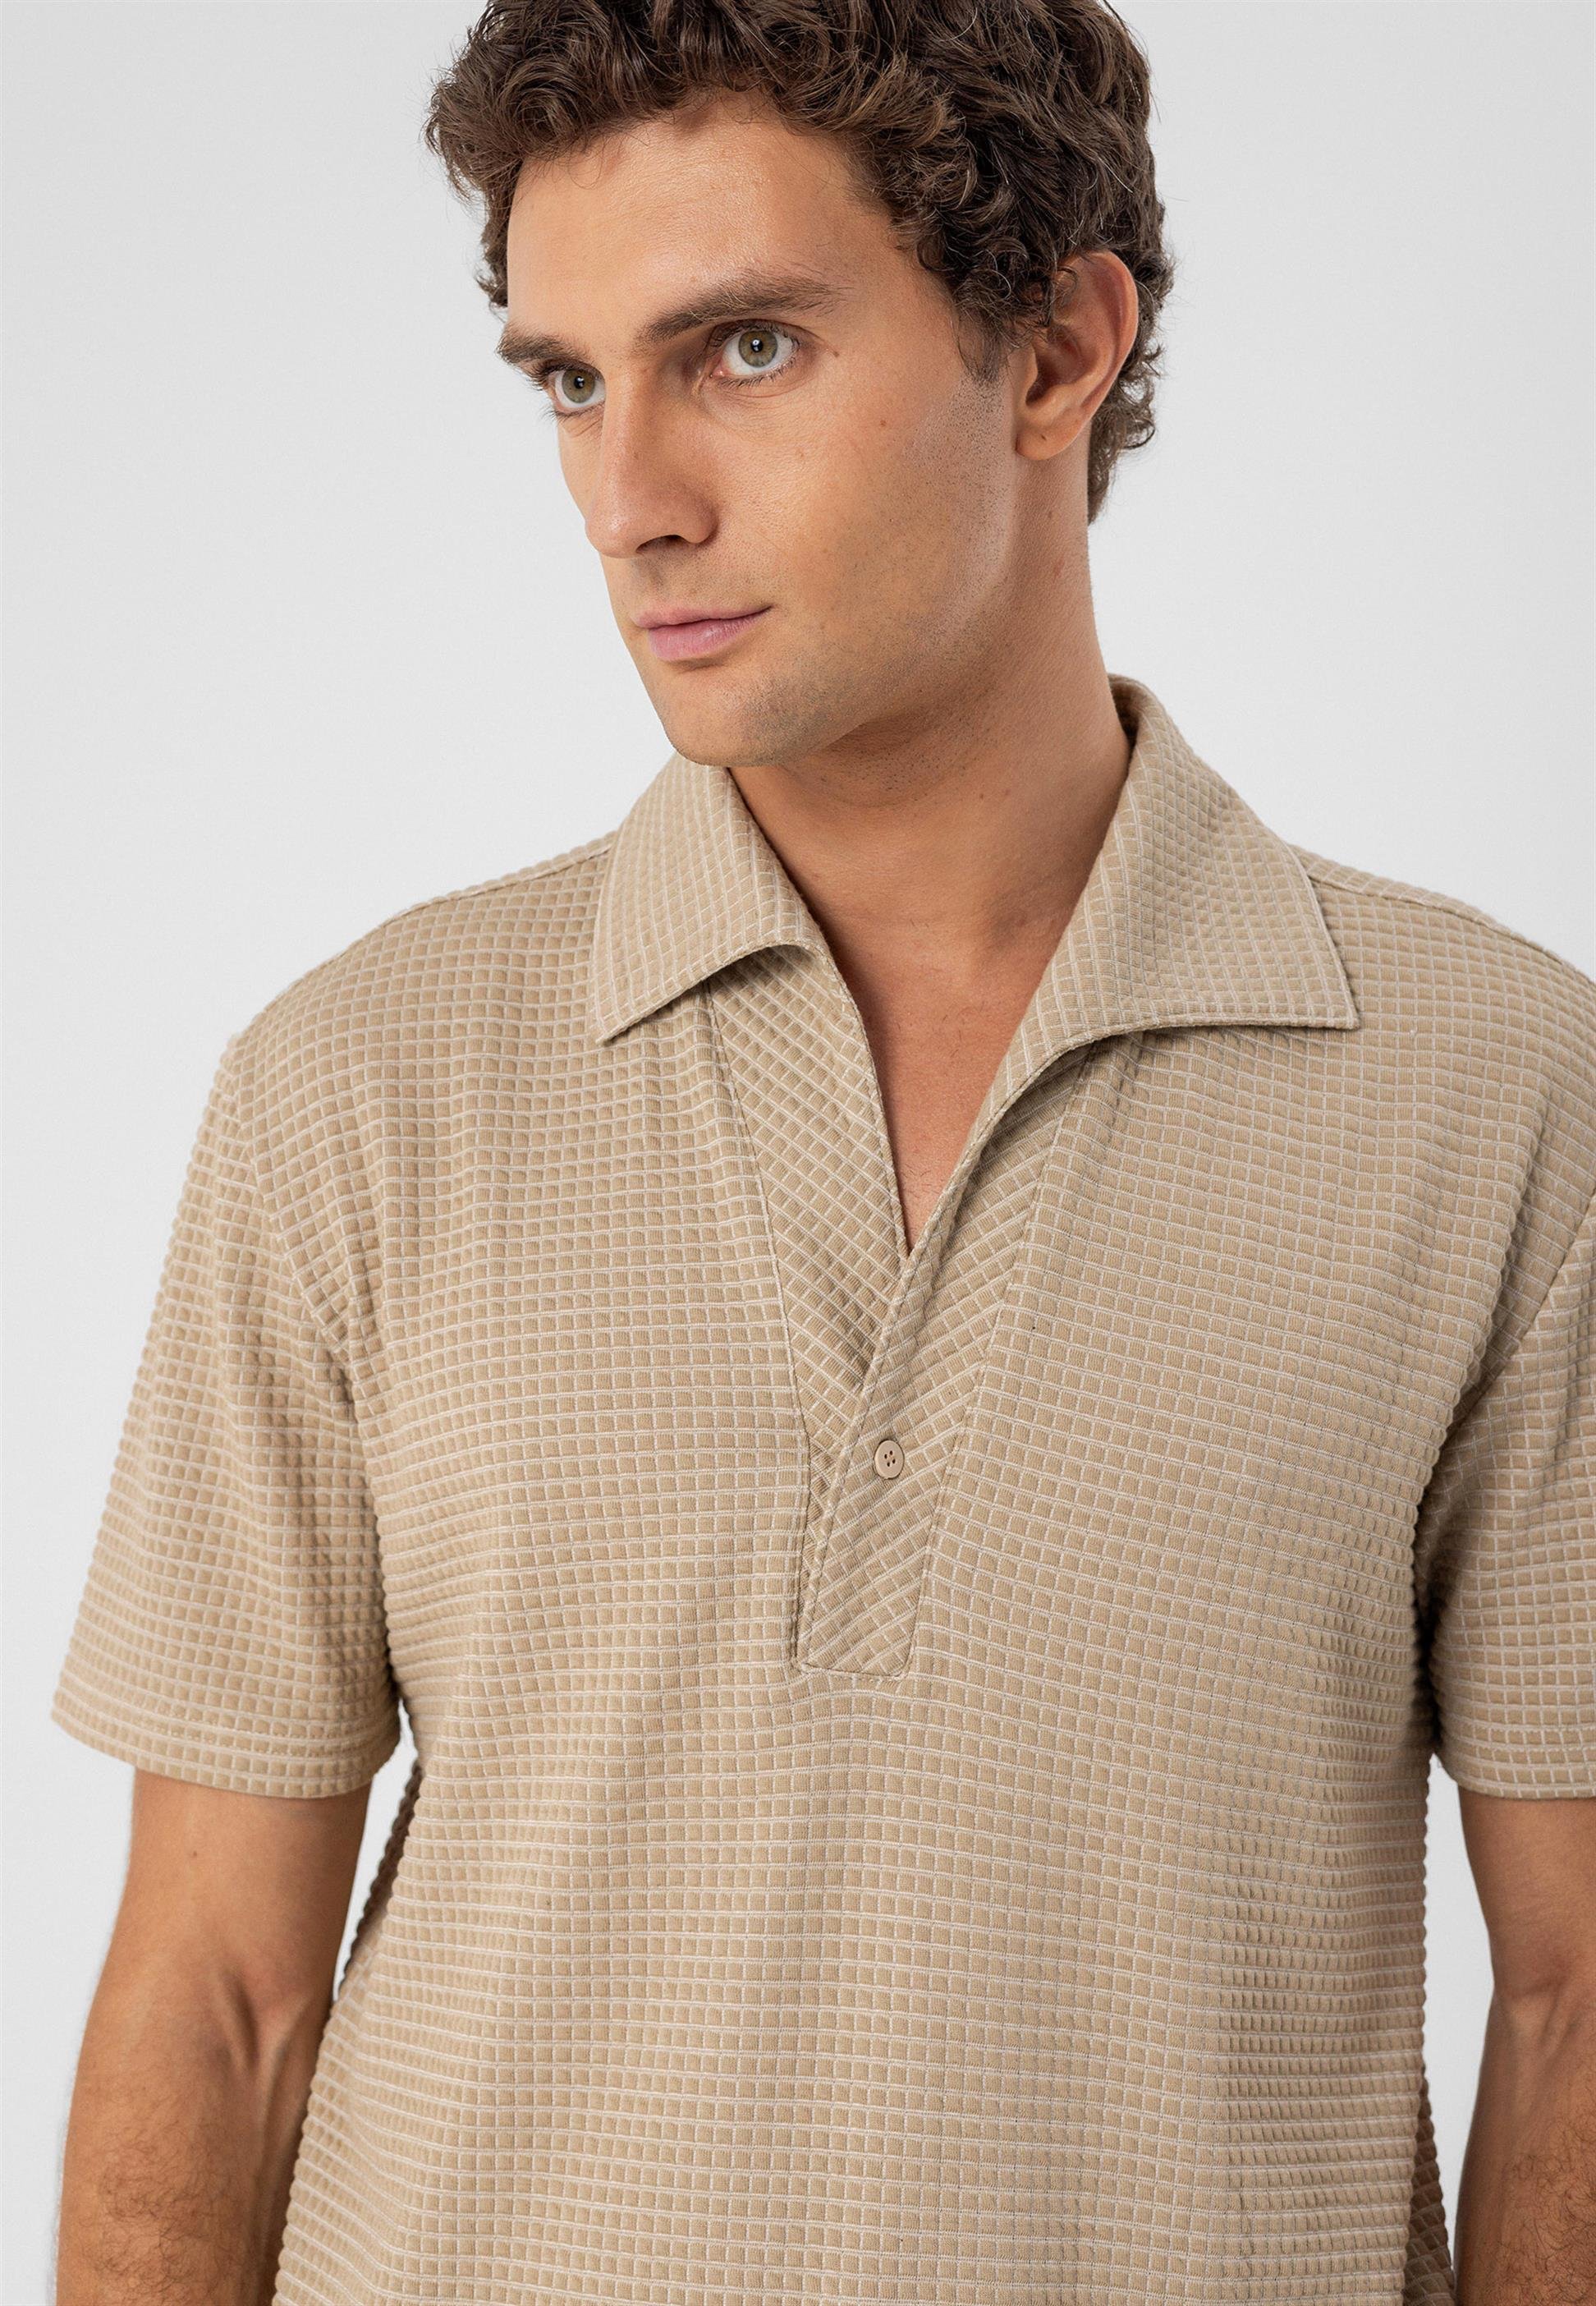 Wide Collar Knitwear Men's Shirt